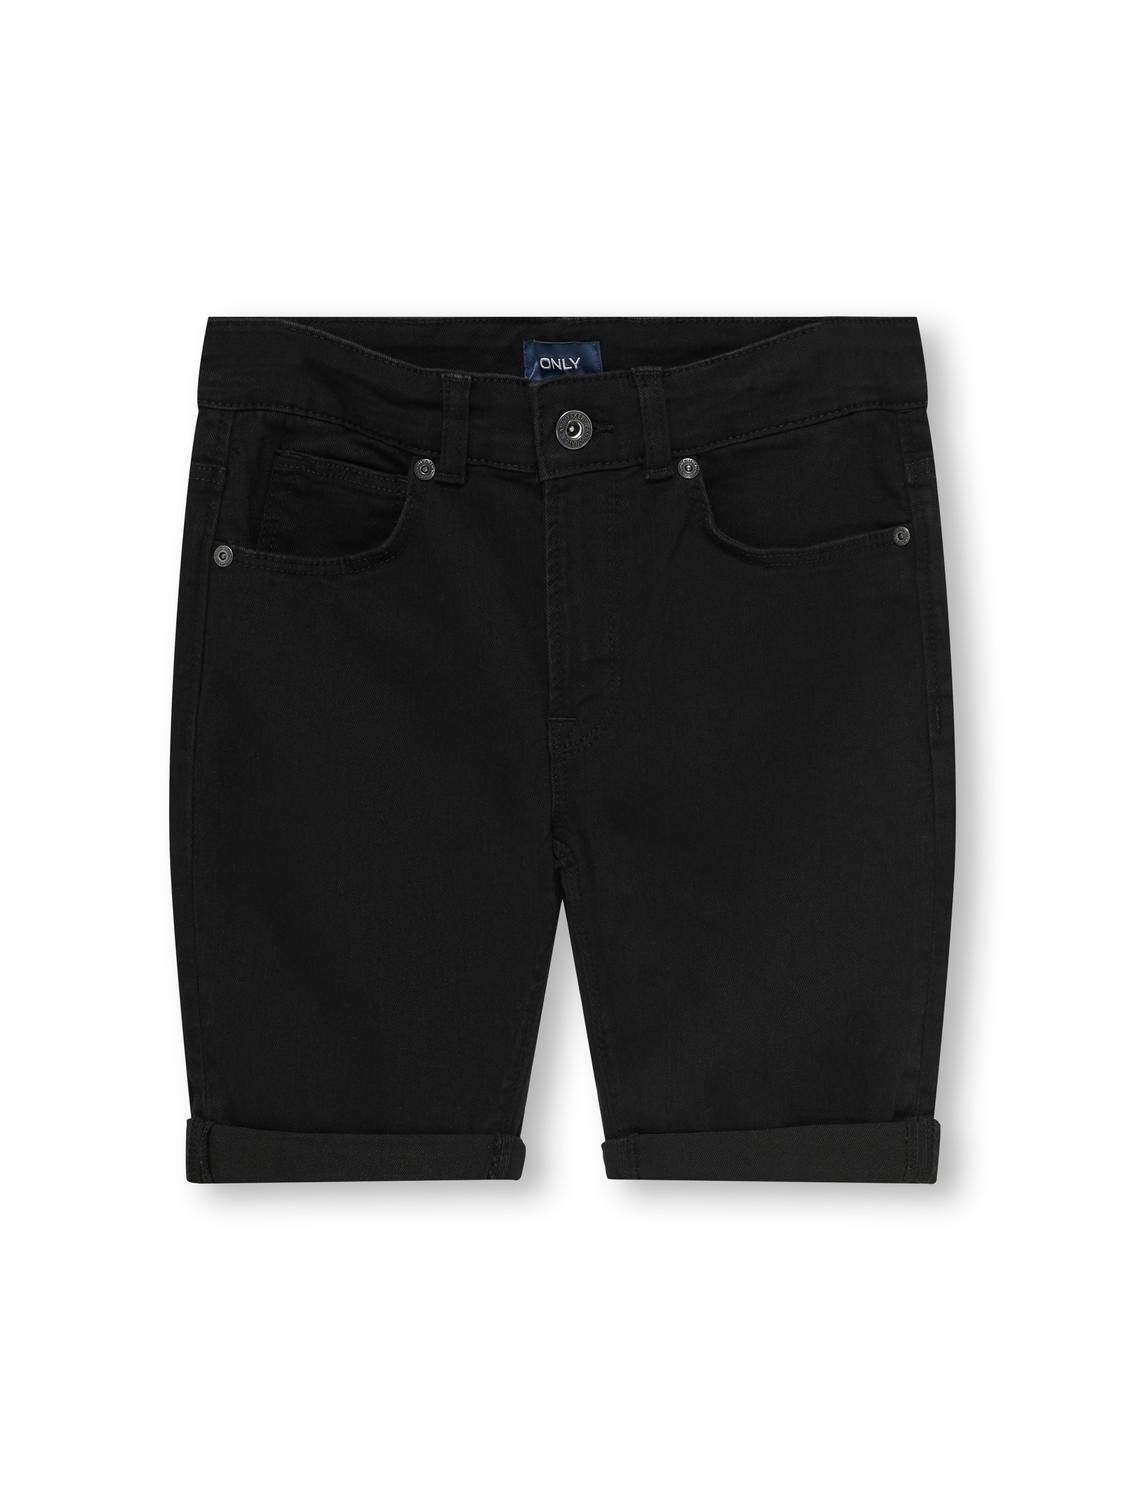 ONLY Shorts Regular Fit -Washed Black - 15280036